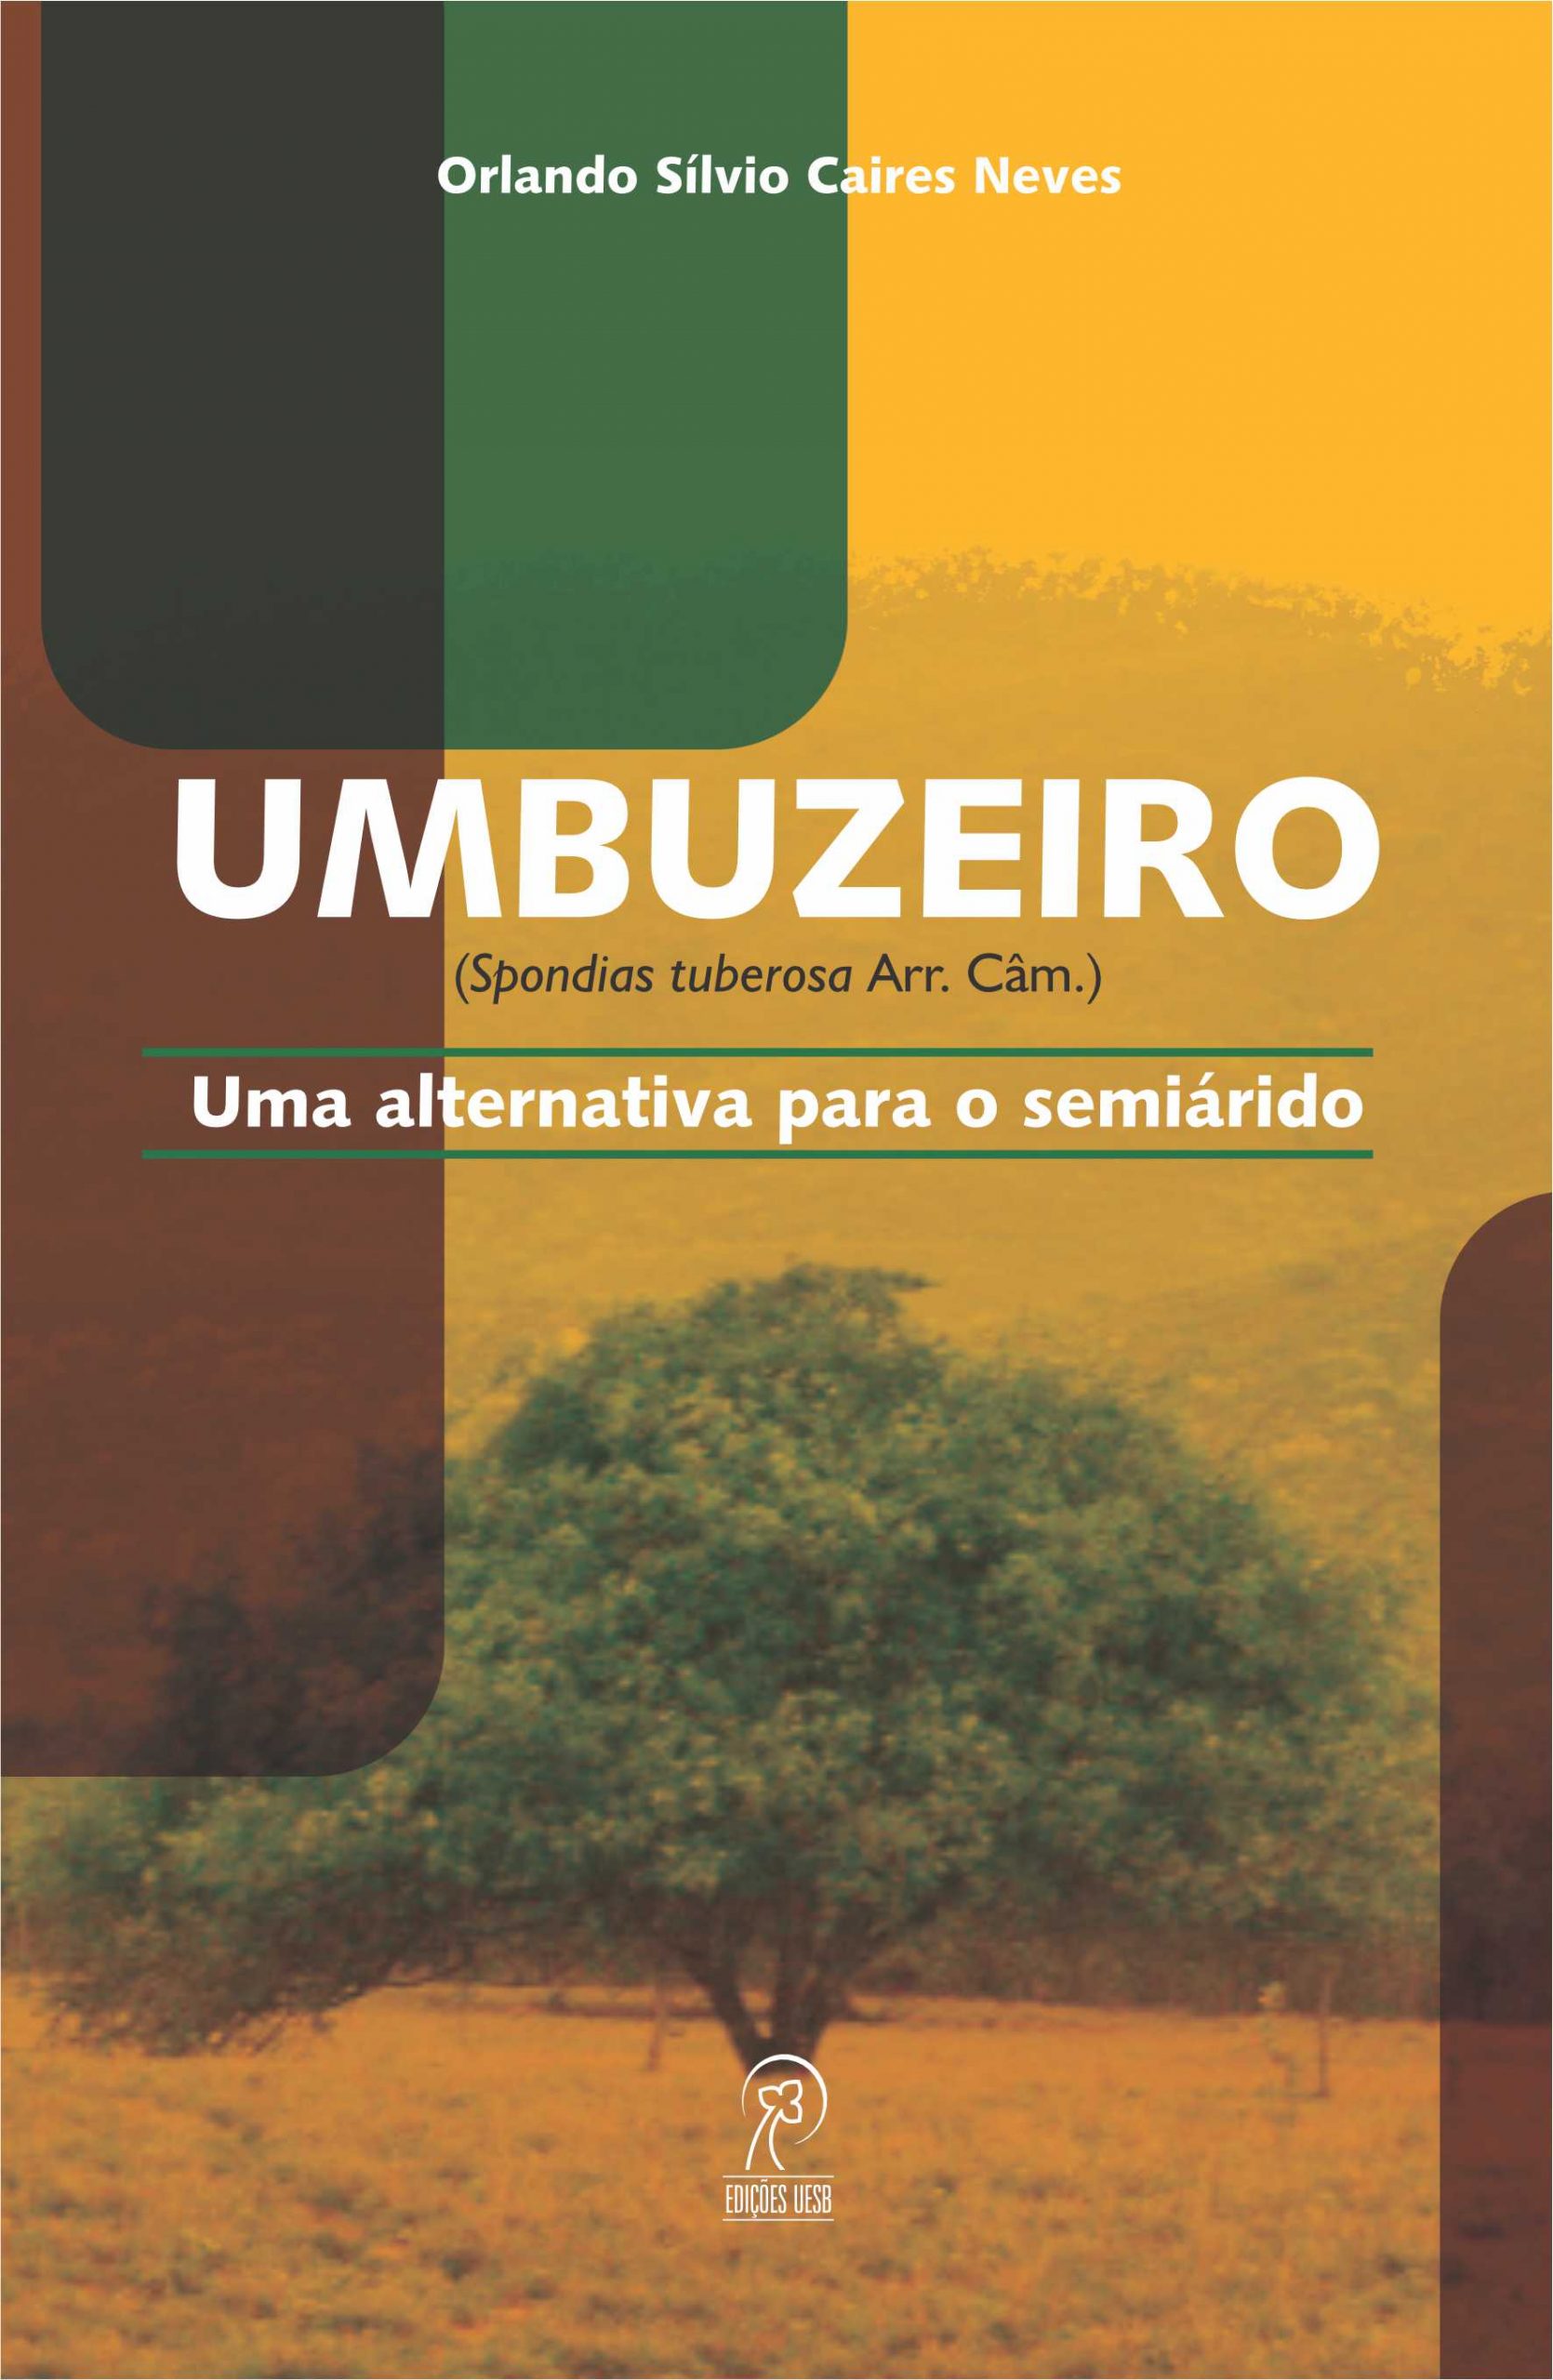 Umbuzeiro (Spondias tuberosa Arr. Câm.): uma alternativa para o semiárido